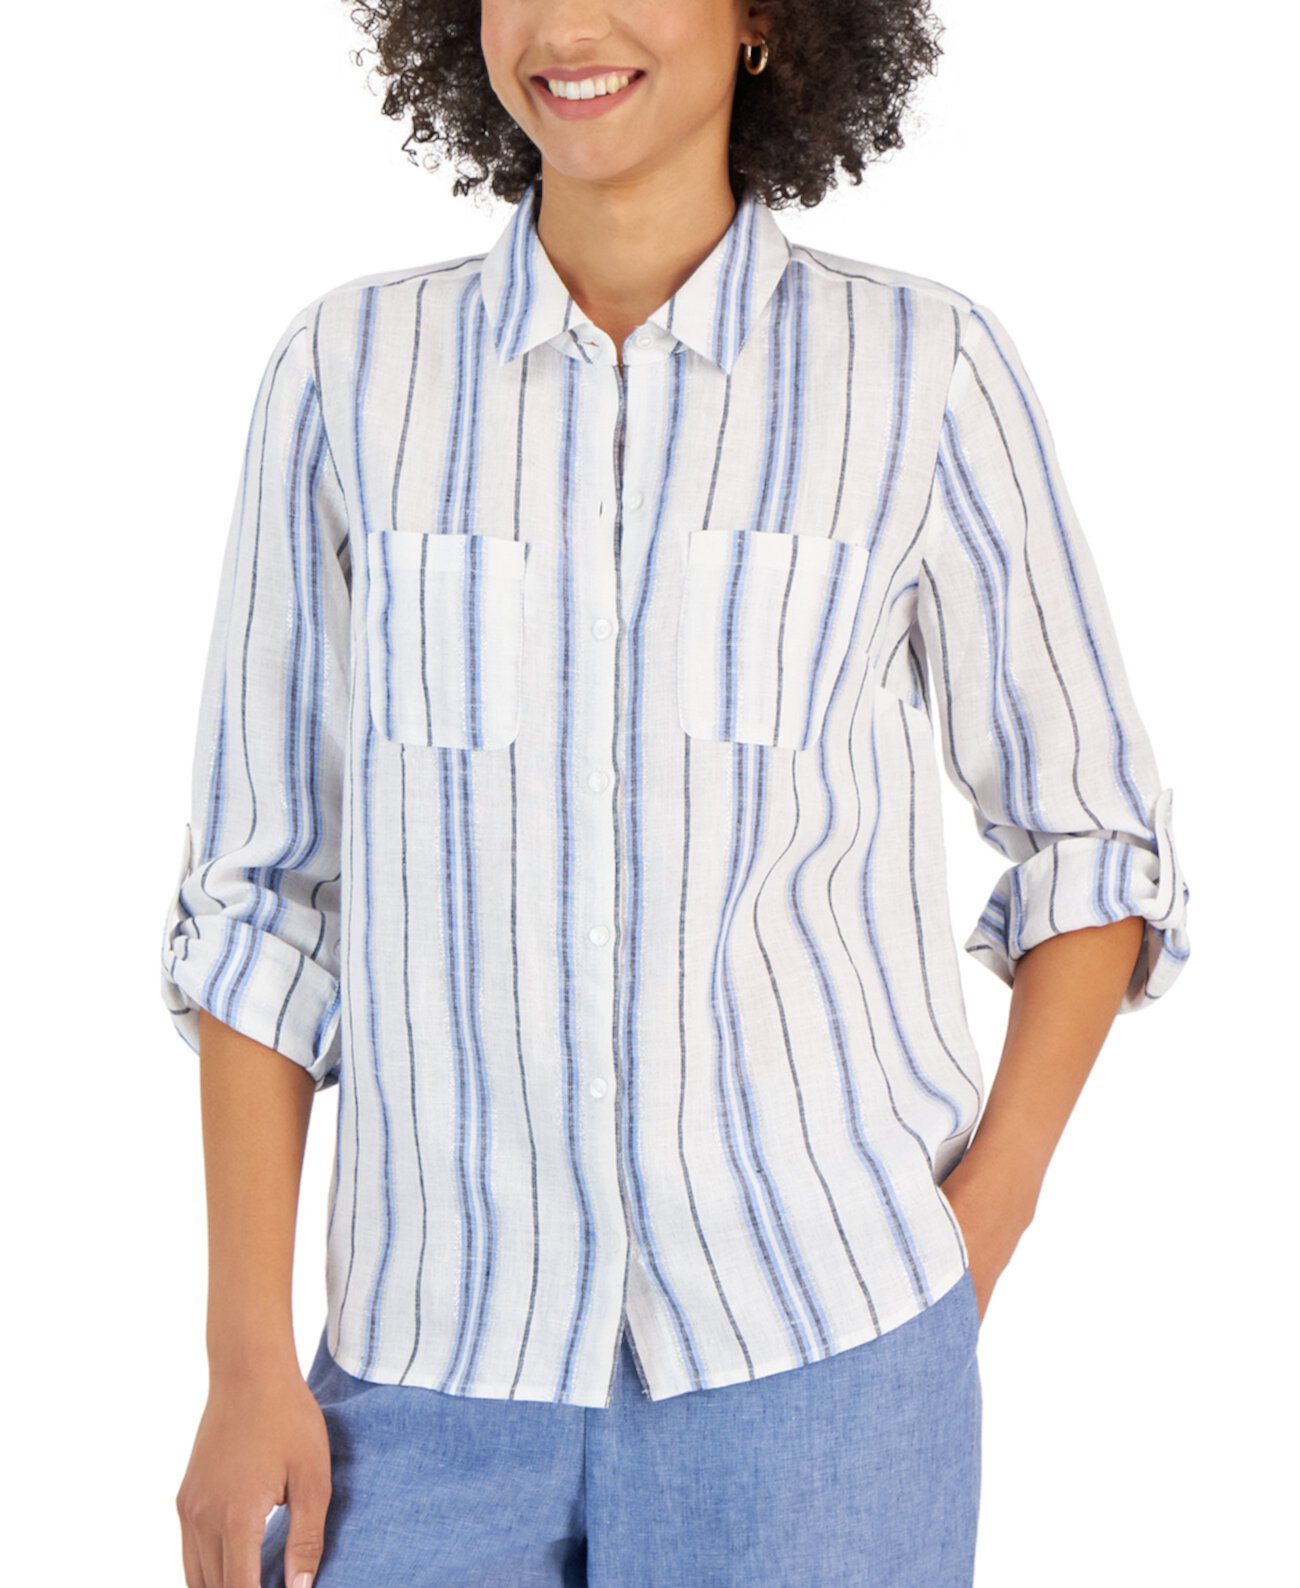 Миниатюрная льняная рубашка в полоску с пуговицами спереди, созданная для Macy's Charter Club